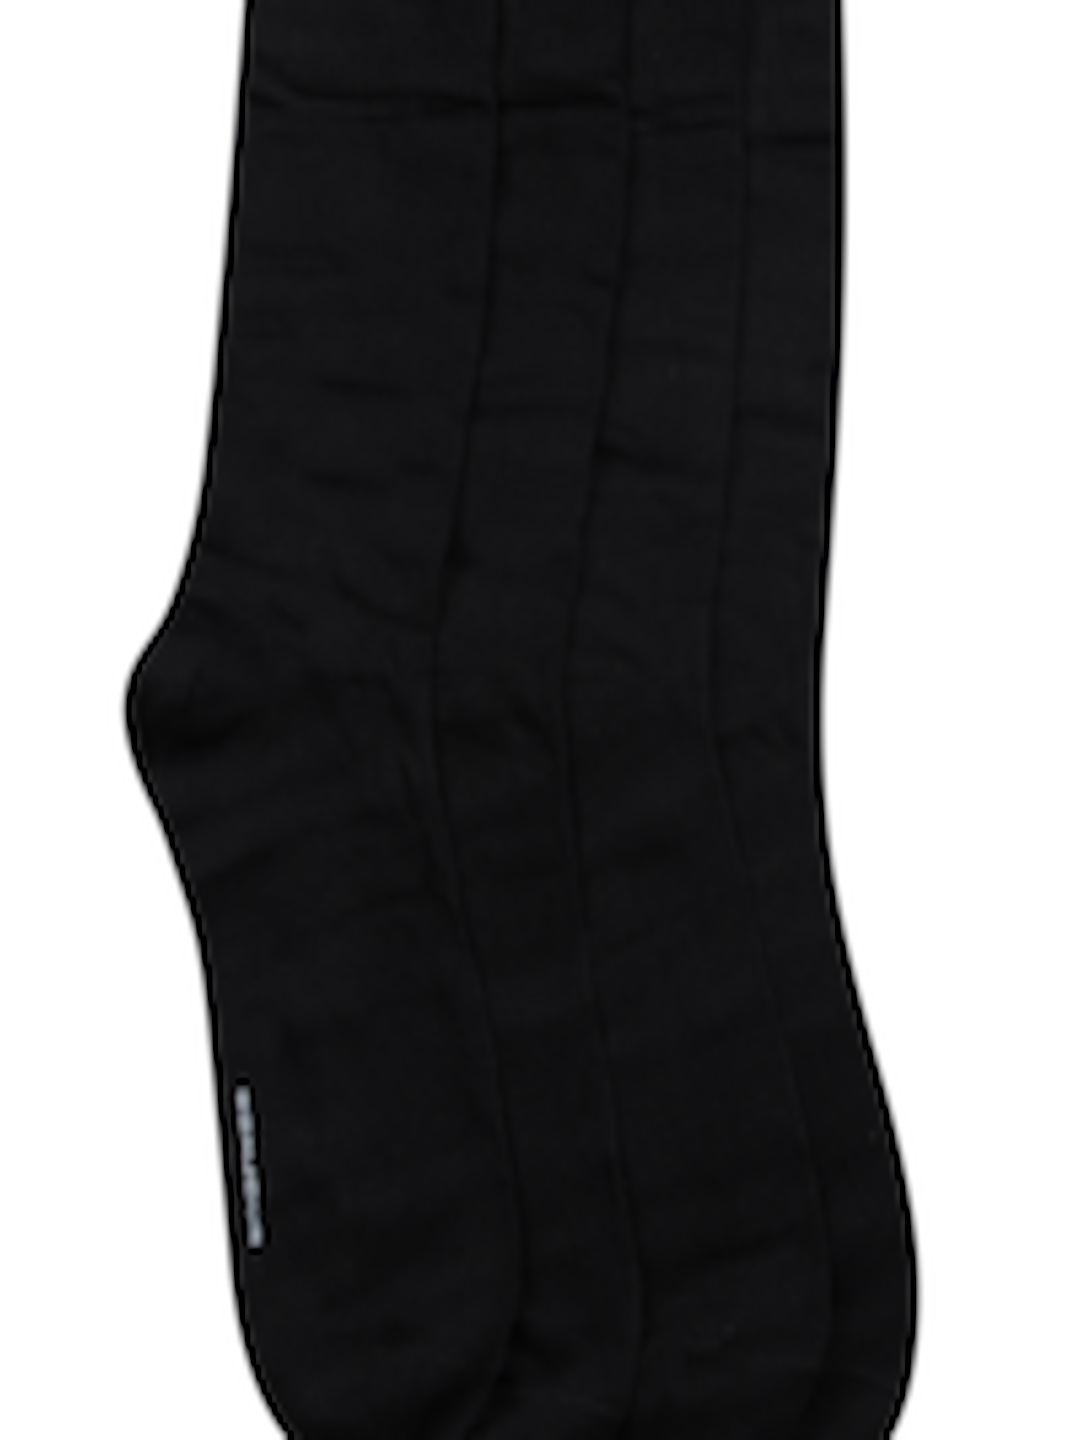 Buy Bonjour Men Set Of 4 Black Socks - Socks for Men 2512715 | Myntra